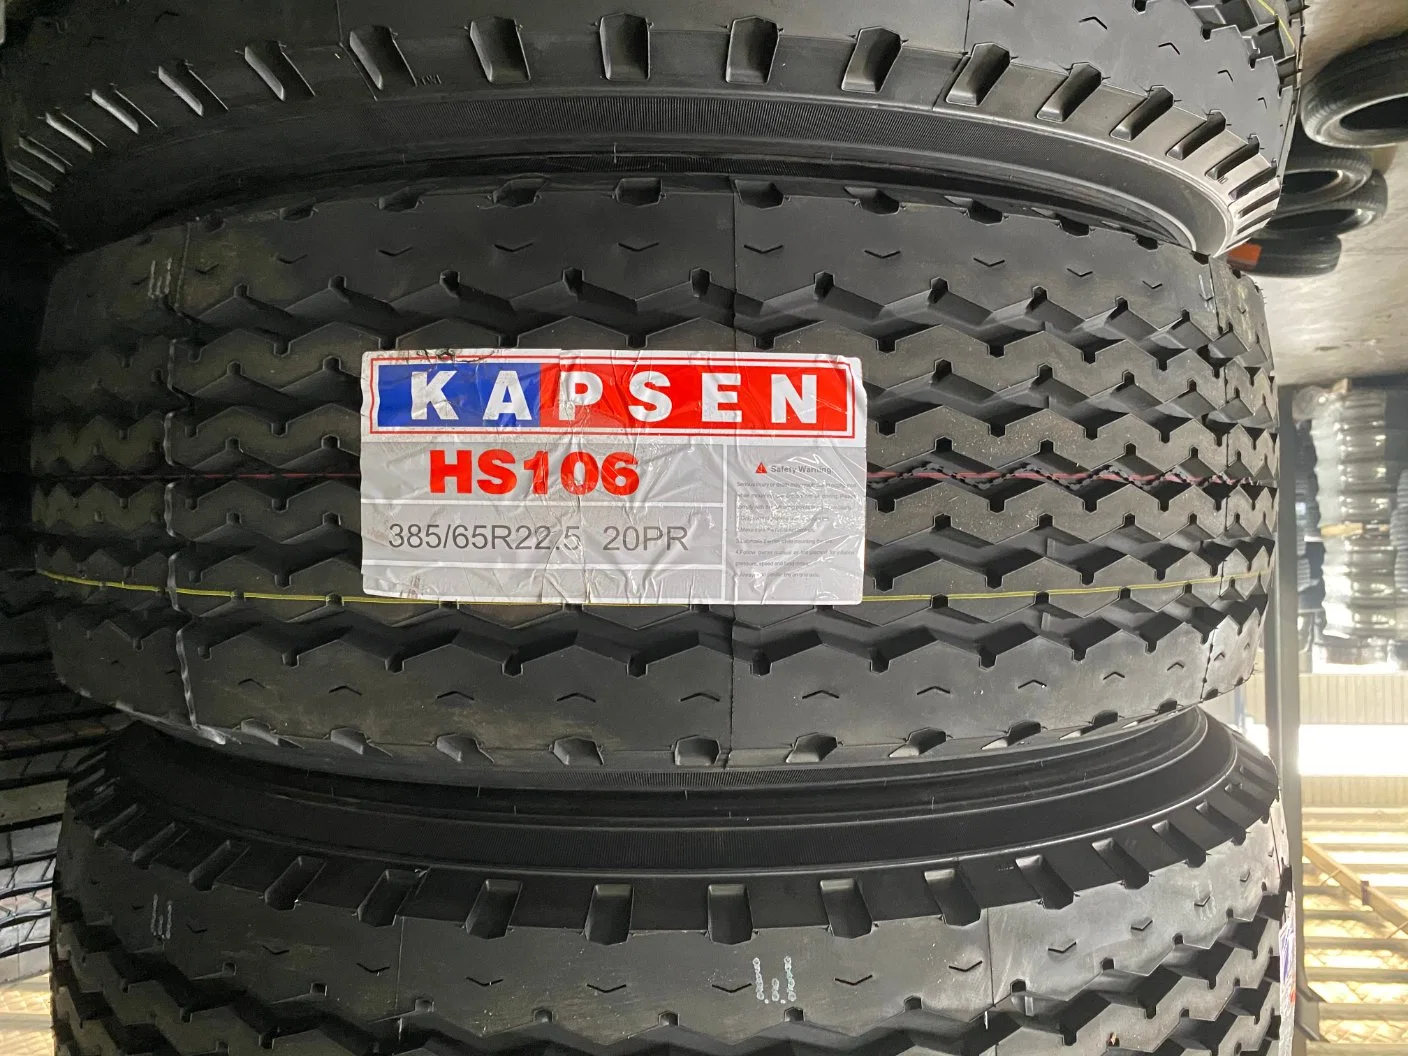 Kapsen/Taitong/Terraking Marca neumáticos TBR 385/65r22.5 20PR HS166 HS106 HS209 Radial Neumático para camión súper sencillo